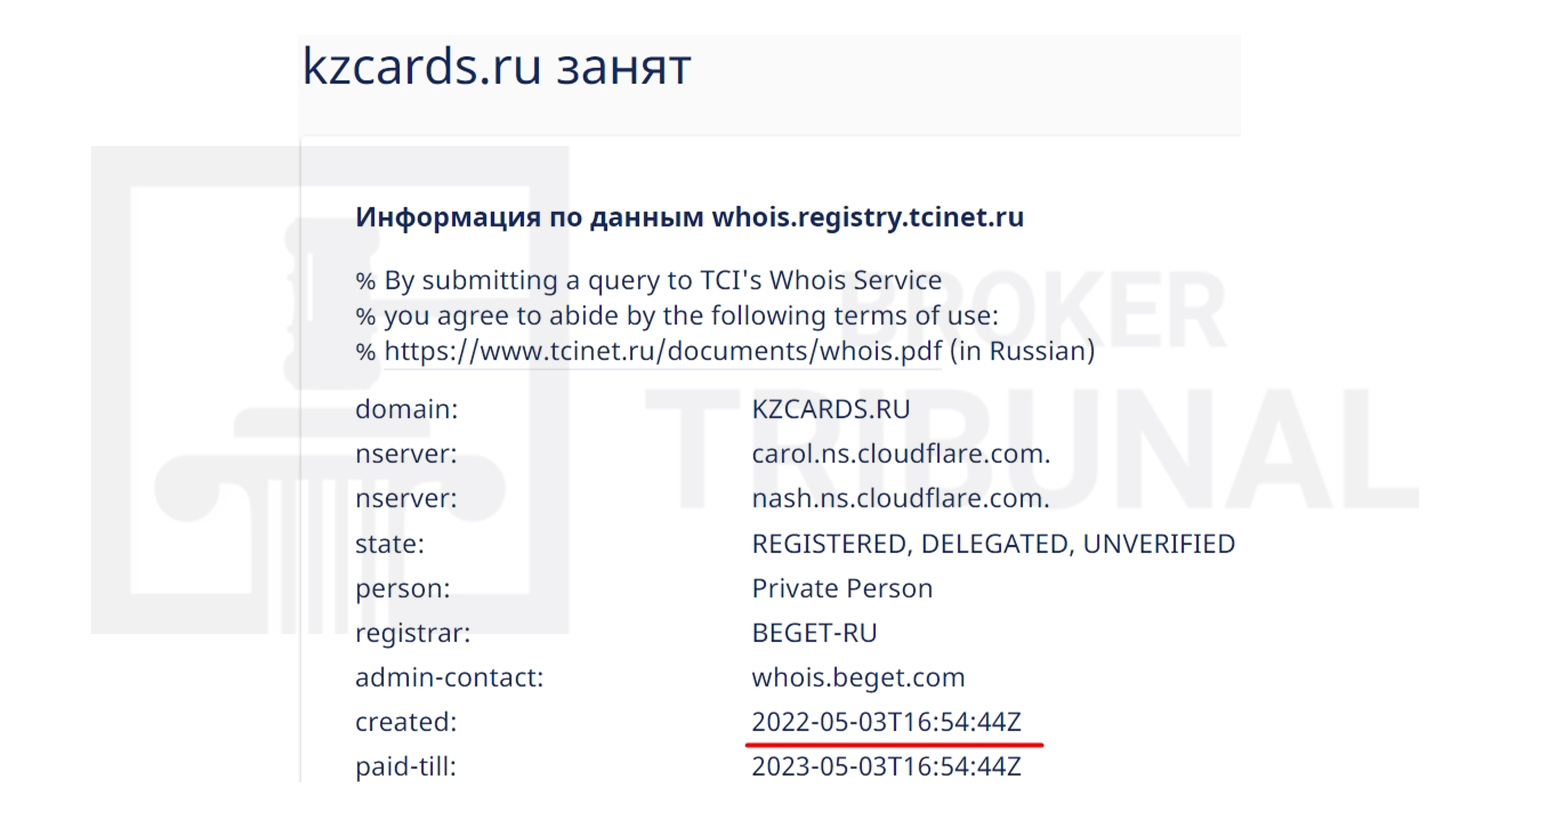 Обман с выдачей карт Visa и MasterCard русским